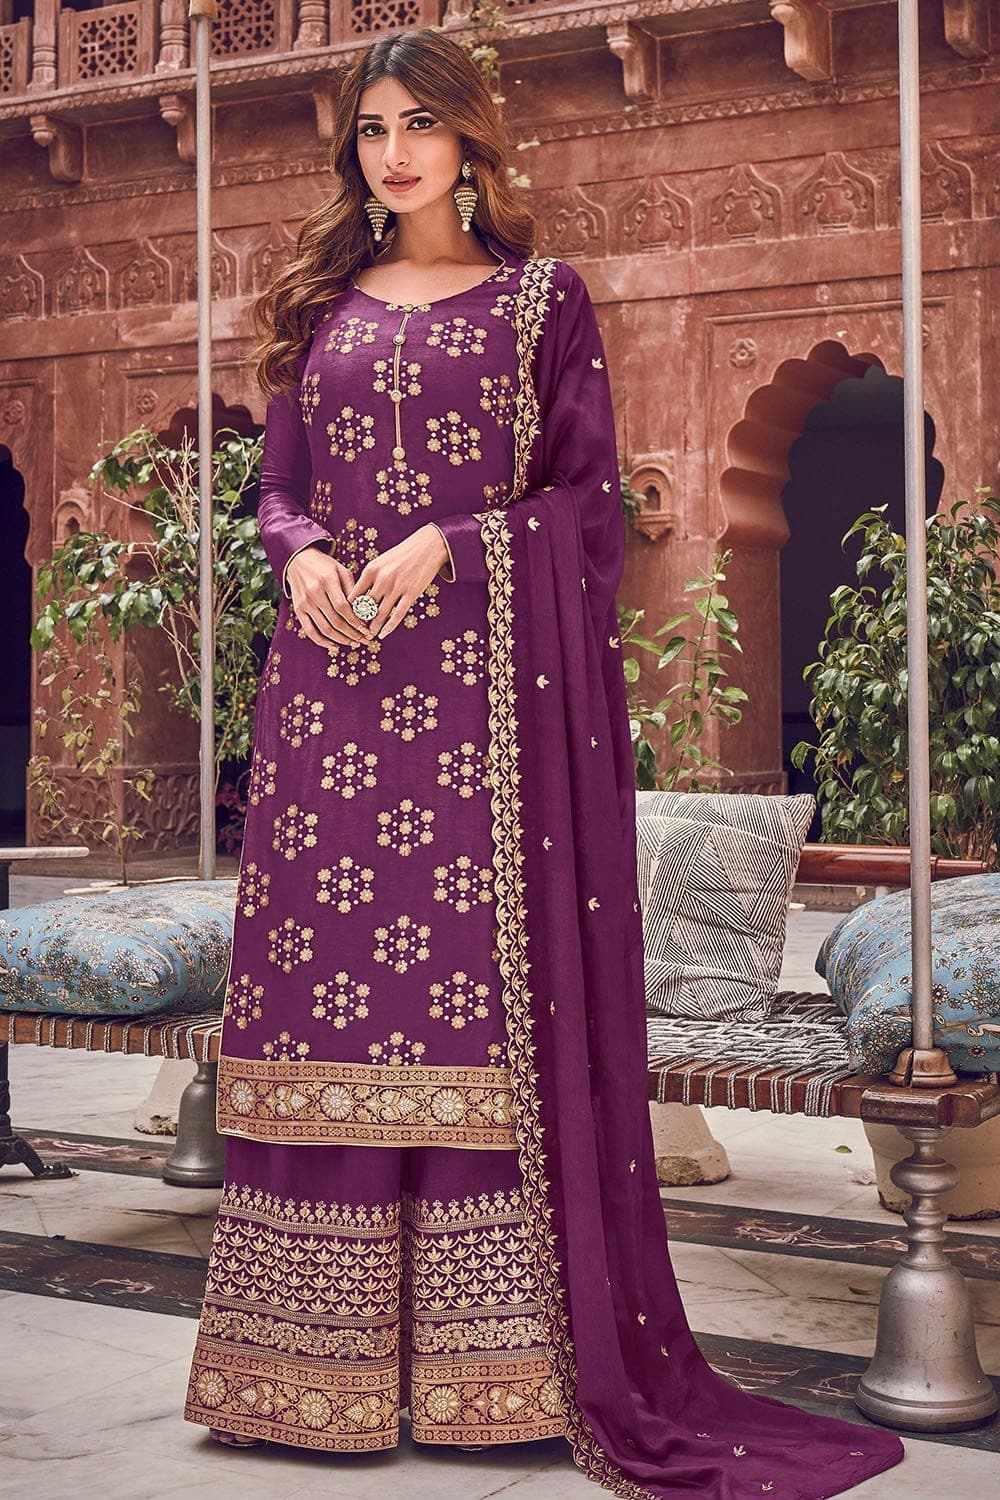 Karwa Chauth 2023: मात्र 500 रुपये से भी कम में मिल जाएंगे सूट के ये खास  डिजाइंस, करवाचौथ के लिए करें ट्राई | karwa chauth 2023 suit designs under  500 rupees | HerZindagi